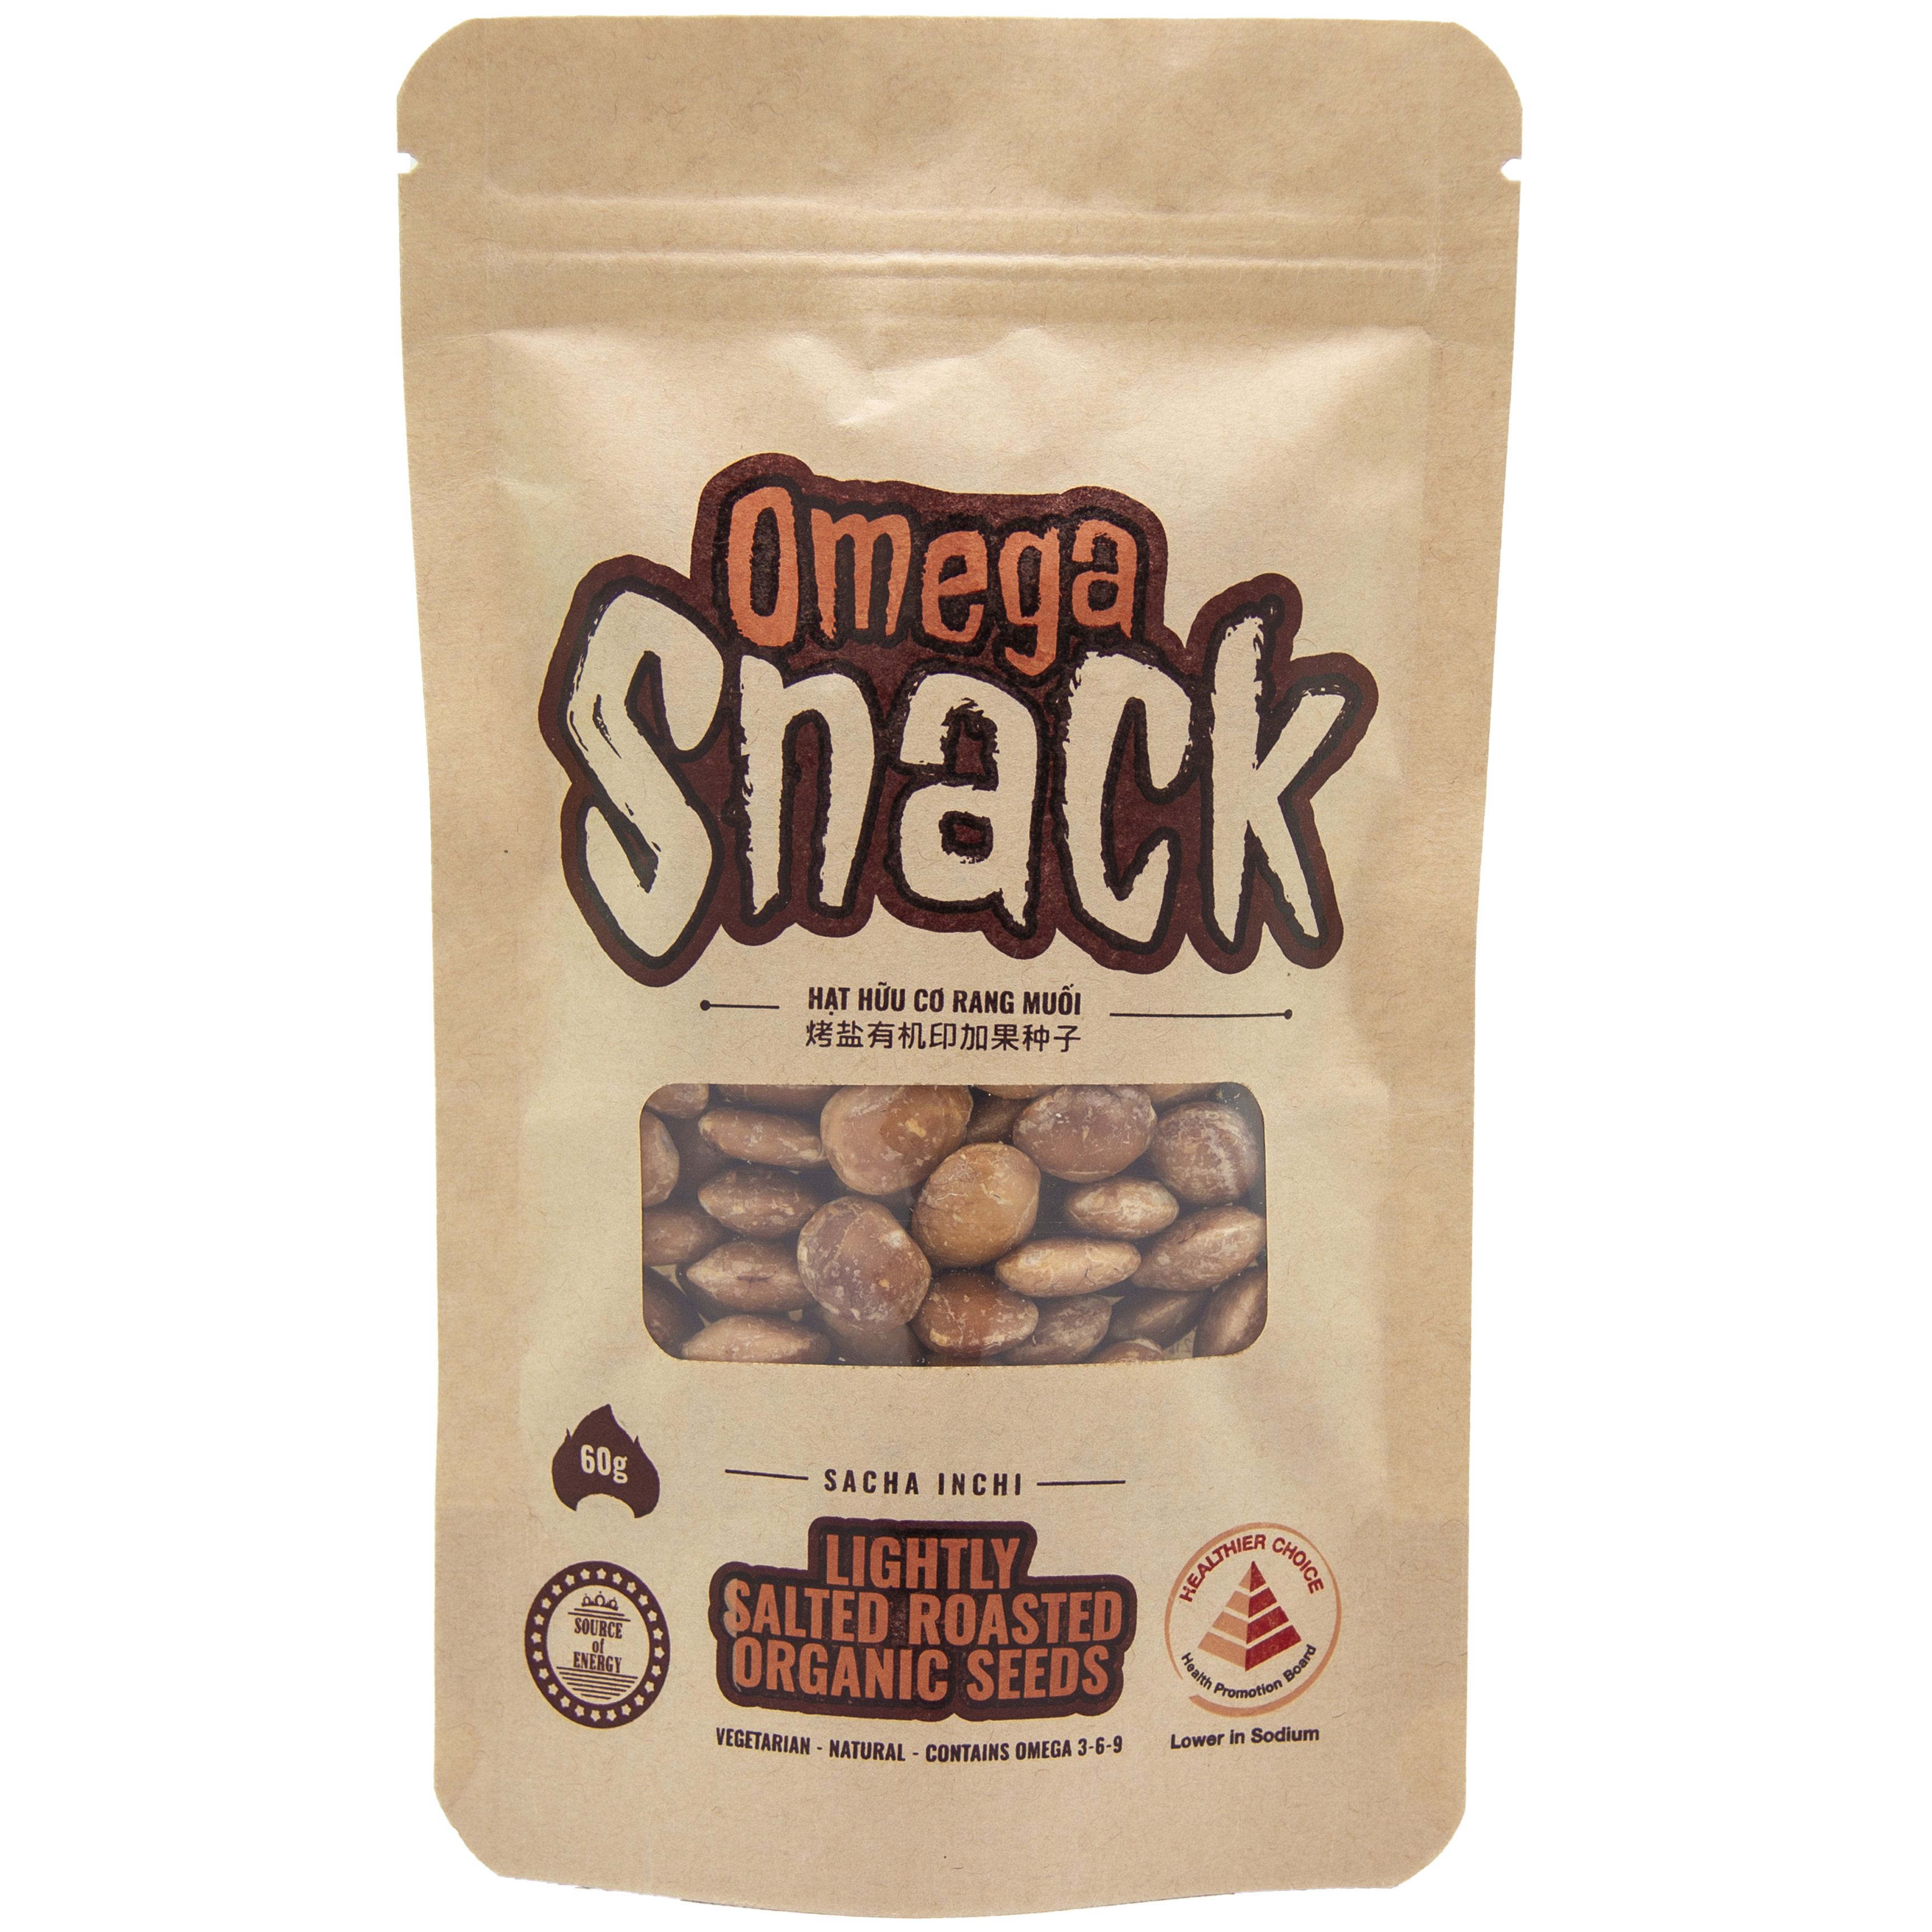 Hạt sacha inchi hữu cơ rang Omega Snack -  60gram  - thực phẩm chay giàu Omega 3-6-9